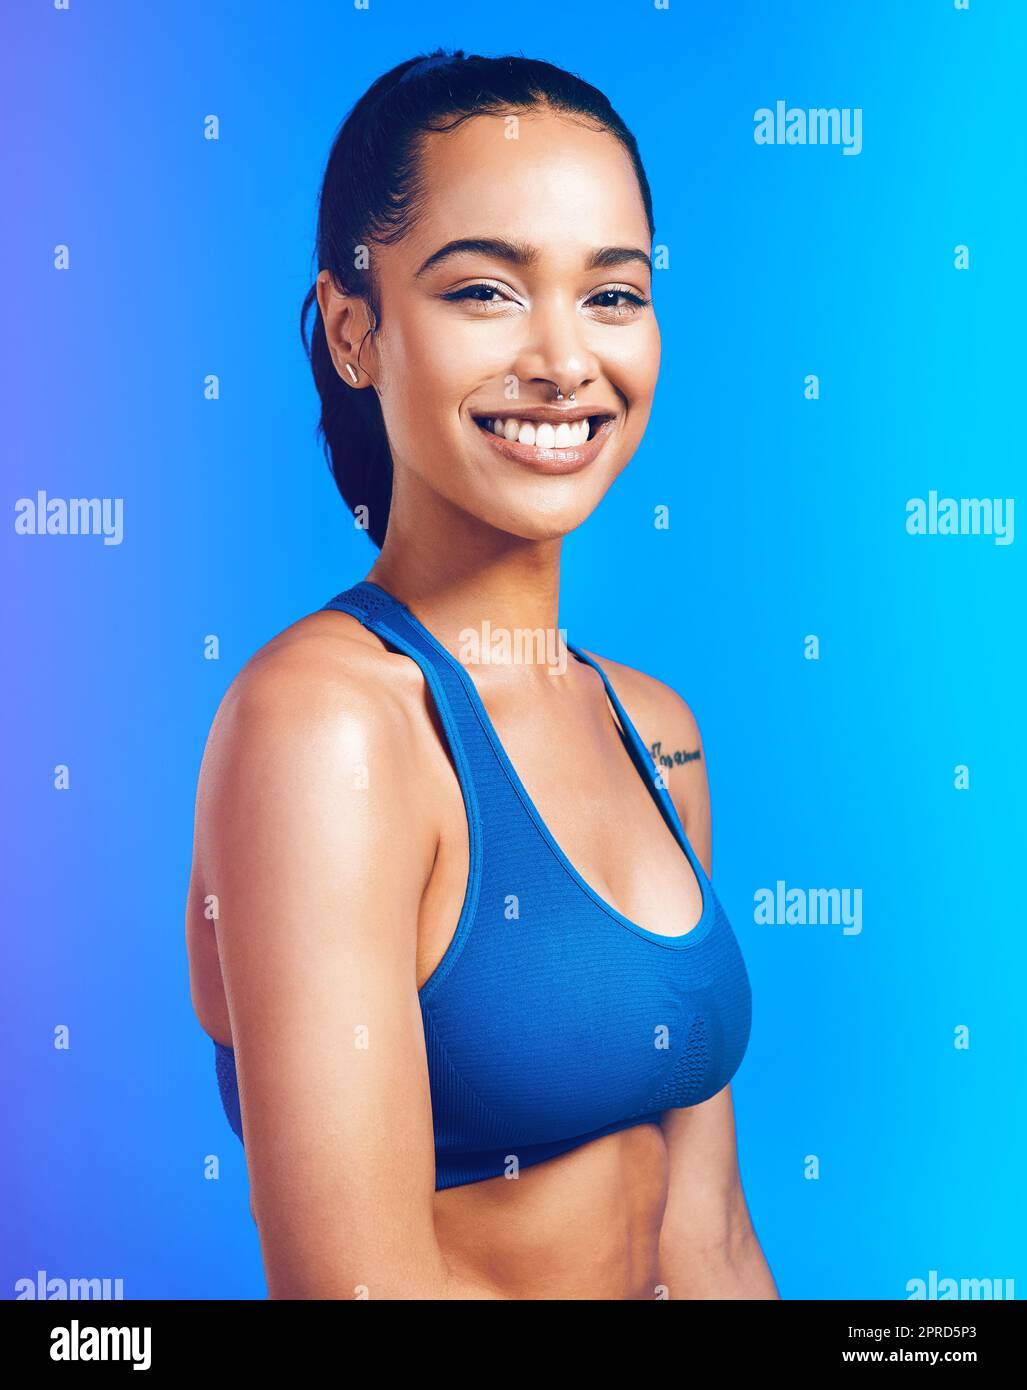 Ich bin am glücklichsten, wenn ich am gesündesten bin. Studioportrait einer attraktiven jungen Sportlerin, die vor blauem Hintergrund posiert. Stockfoto